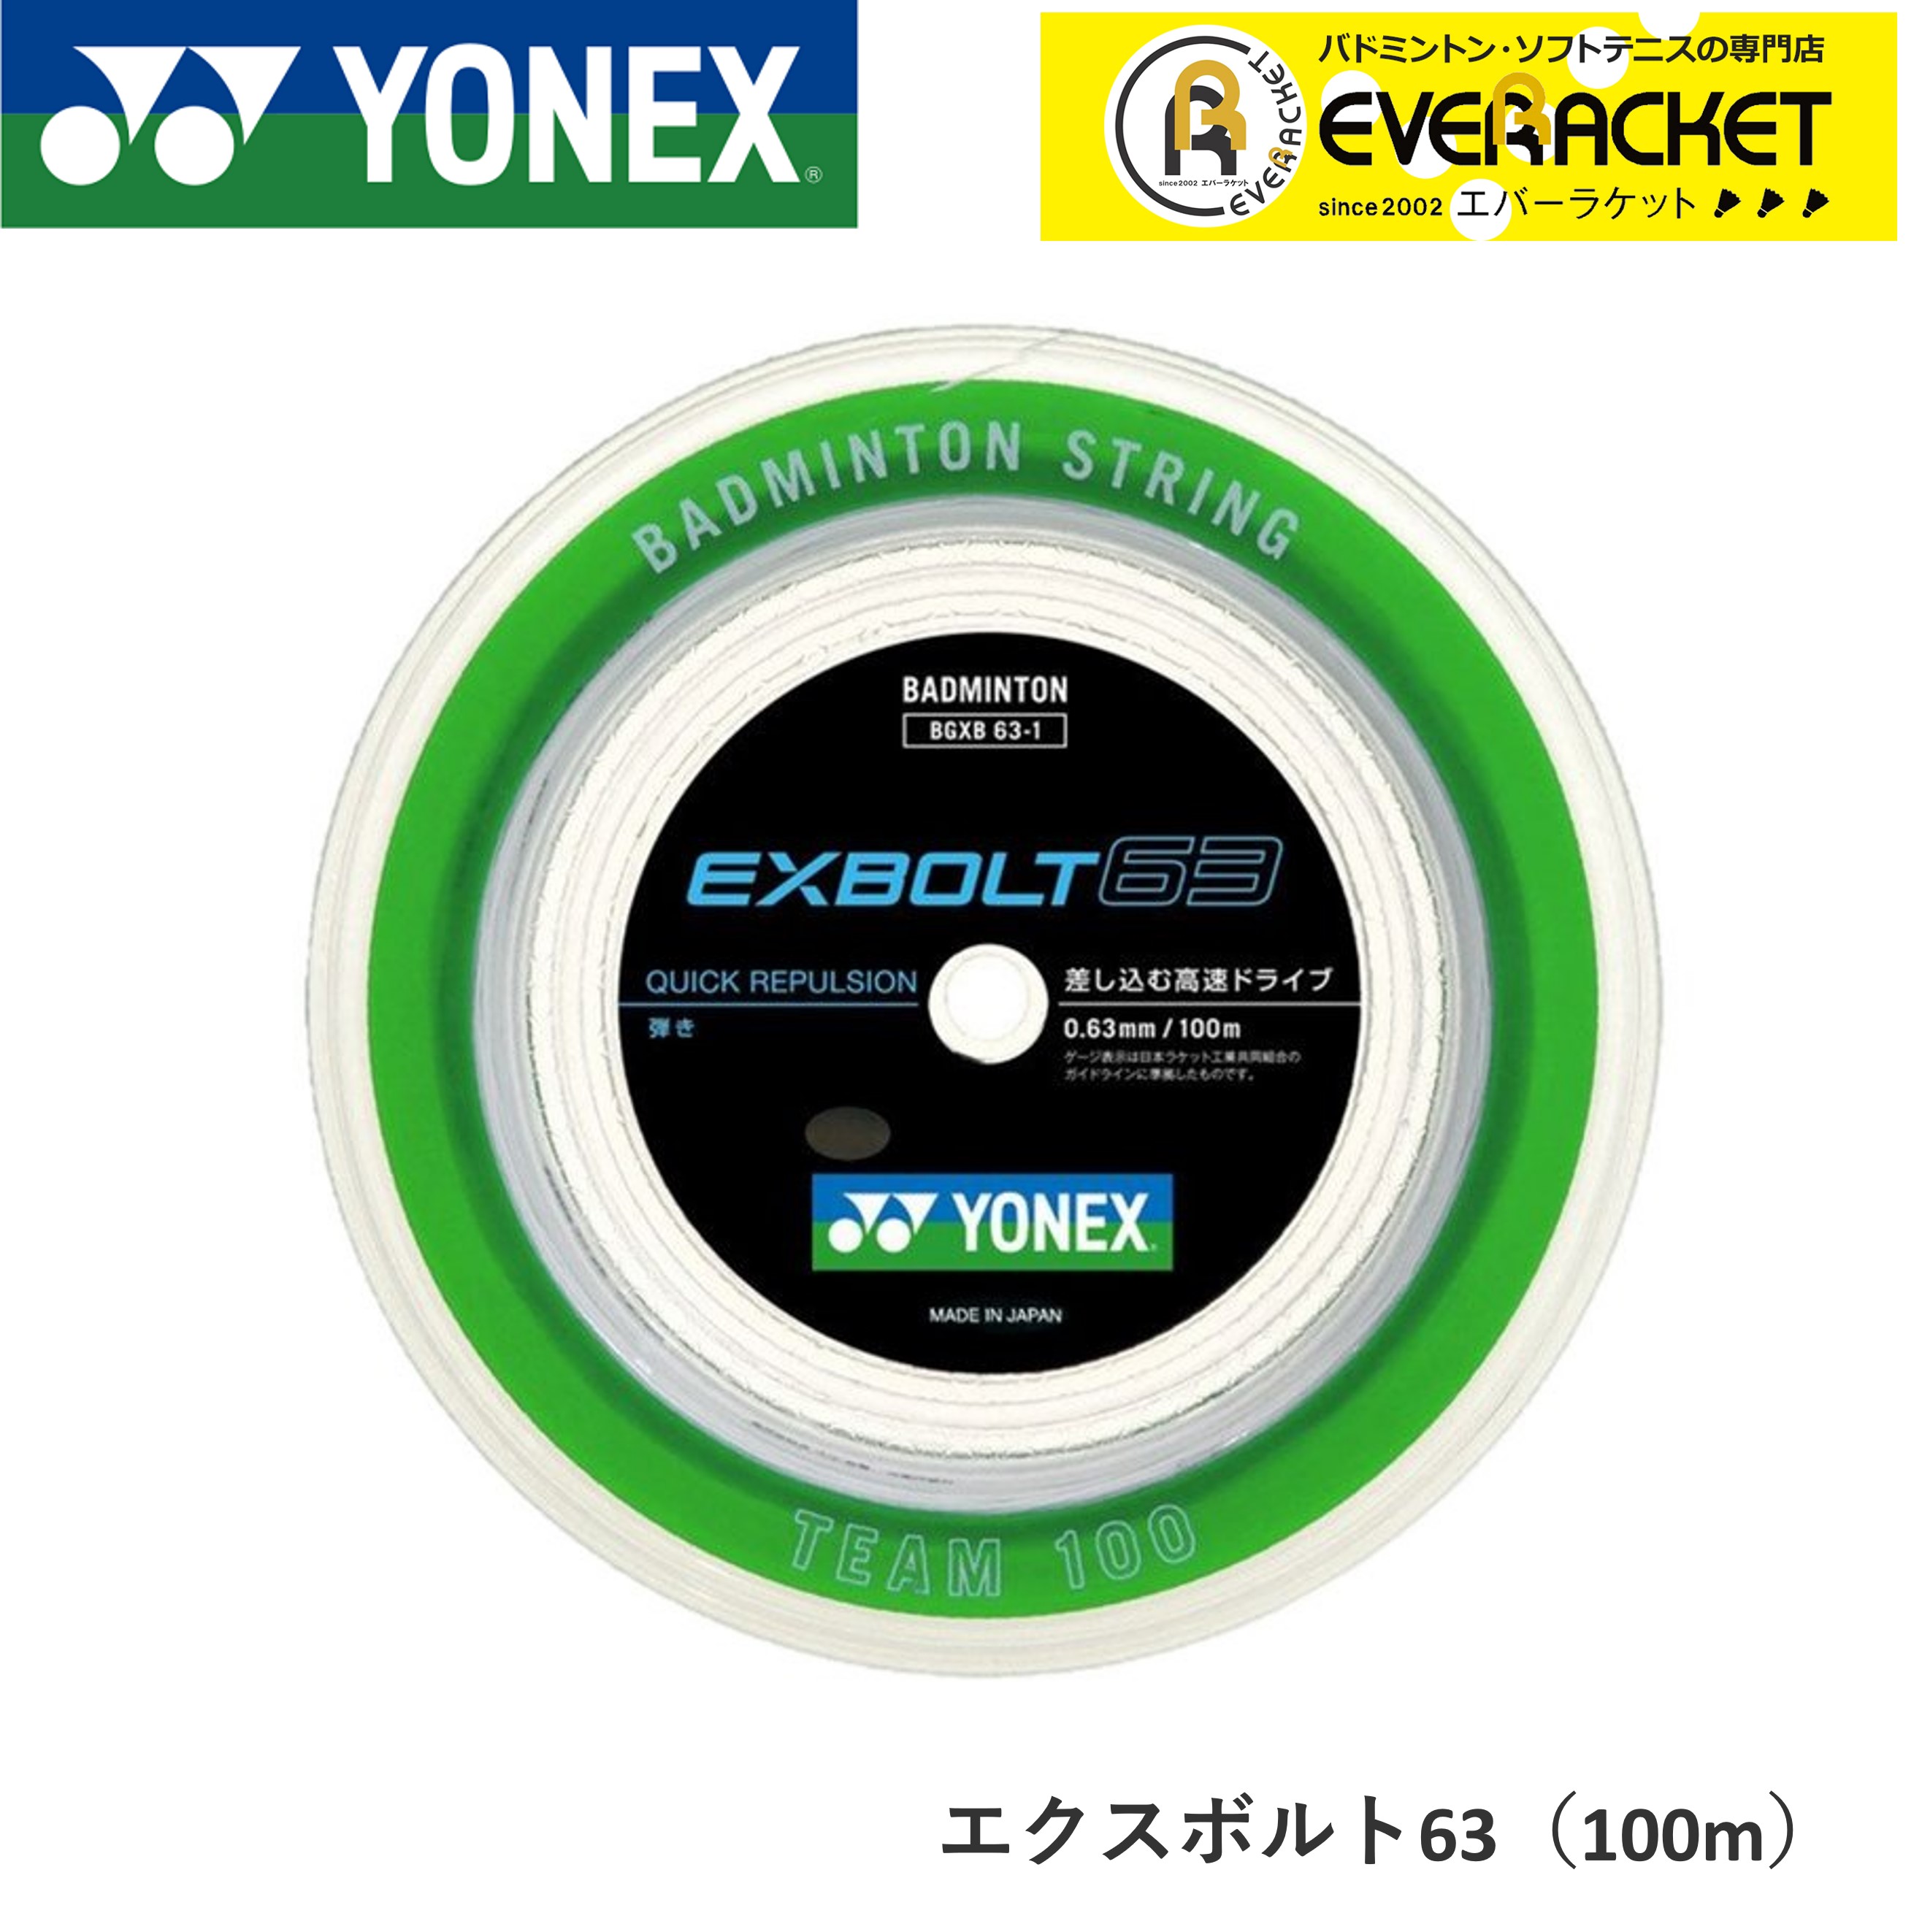 ヨネックス EXBOLT 63 200mロール (エクスボルト63) ホワイト